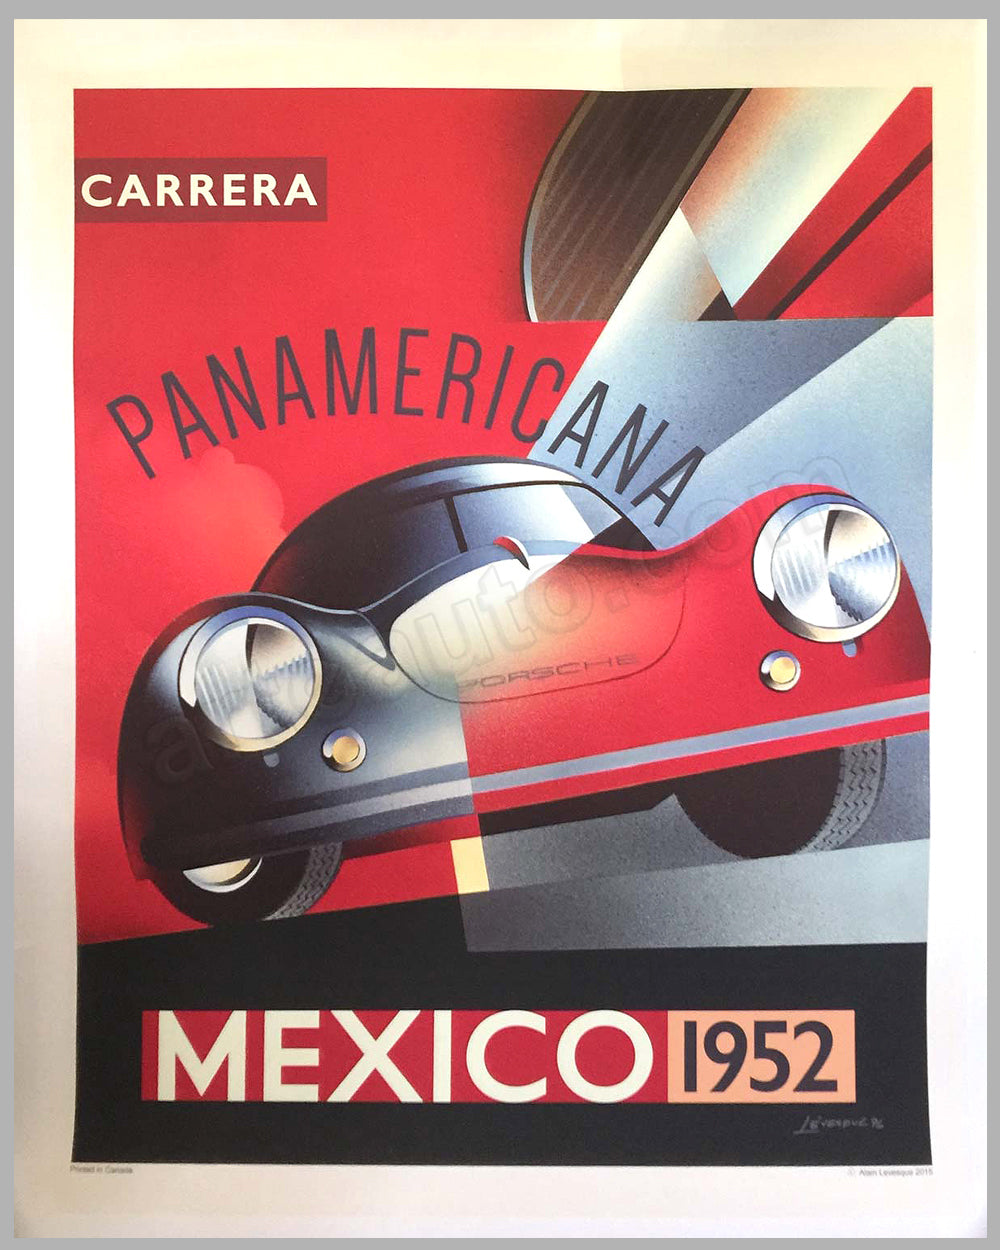 Carrera Panamericana Mexico 1952 Porsche poster by Alain Levesque - l'art  et l'automobile